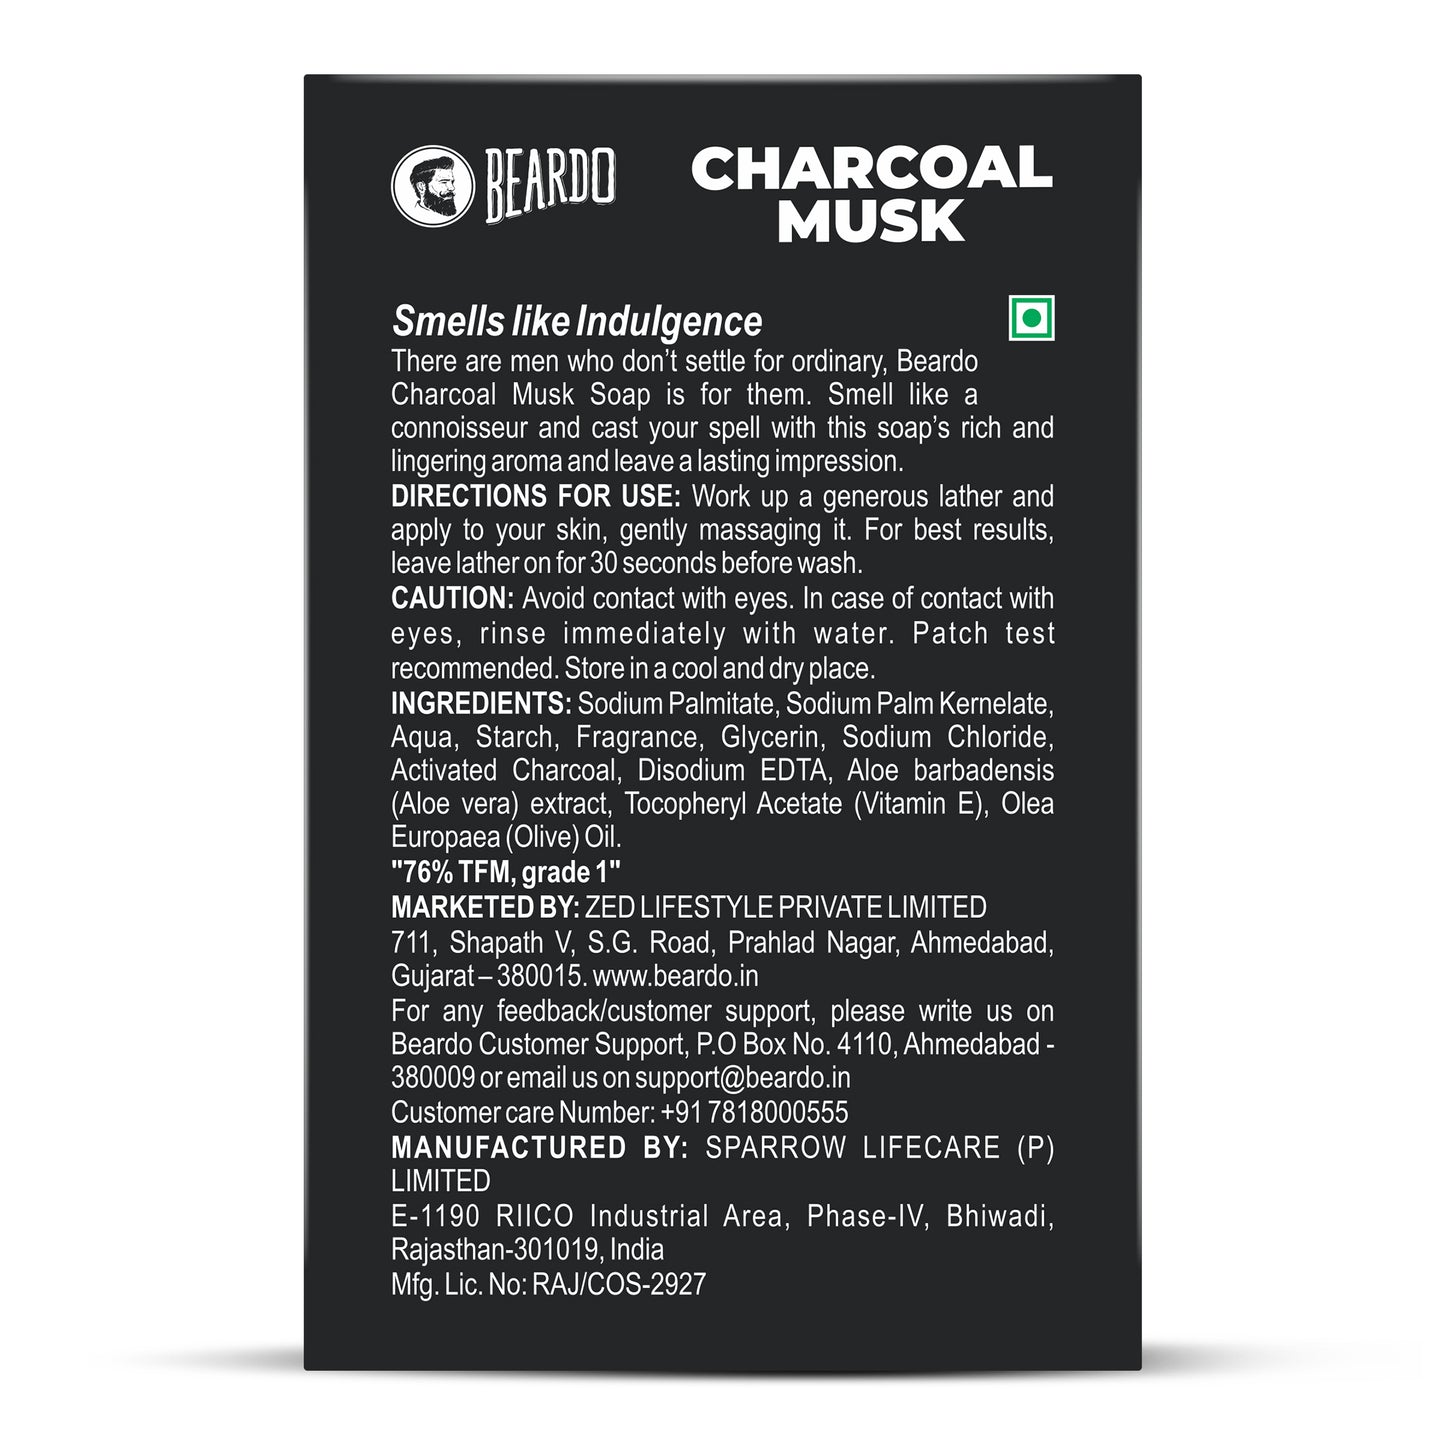 Beardo Charcoal Musk Soap Pack of 3 (3 N x 75g)